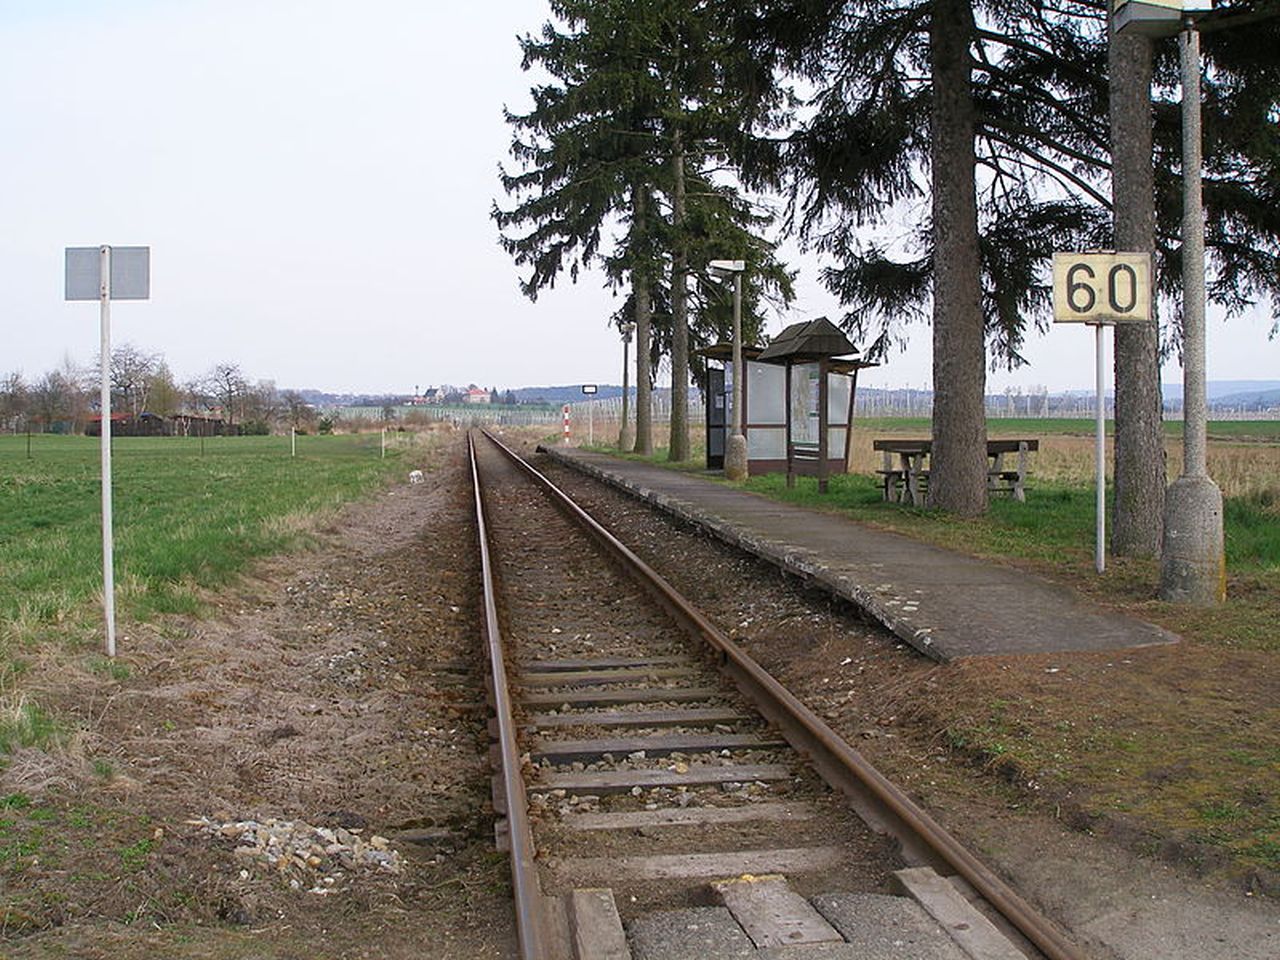 Zastávka Lítkovice na trati Bakov nad Jizerou - Dolní Bousov. Foto: Jan Polák / Wikimedia Commons